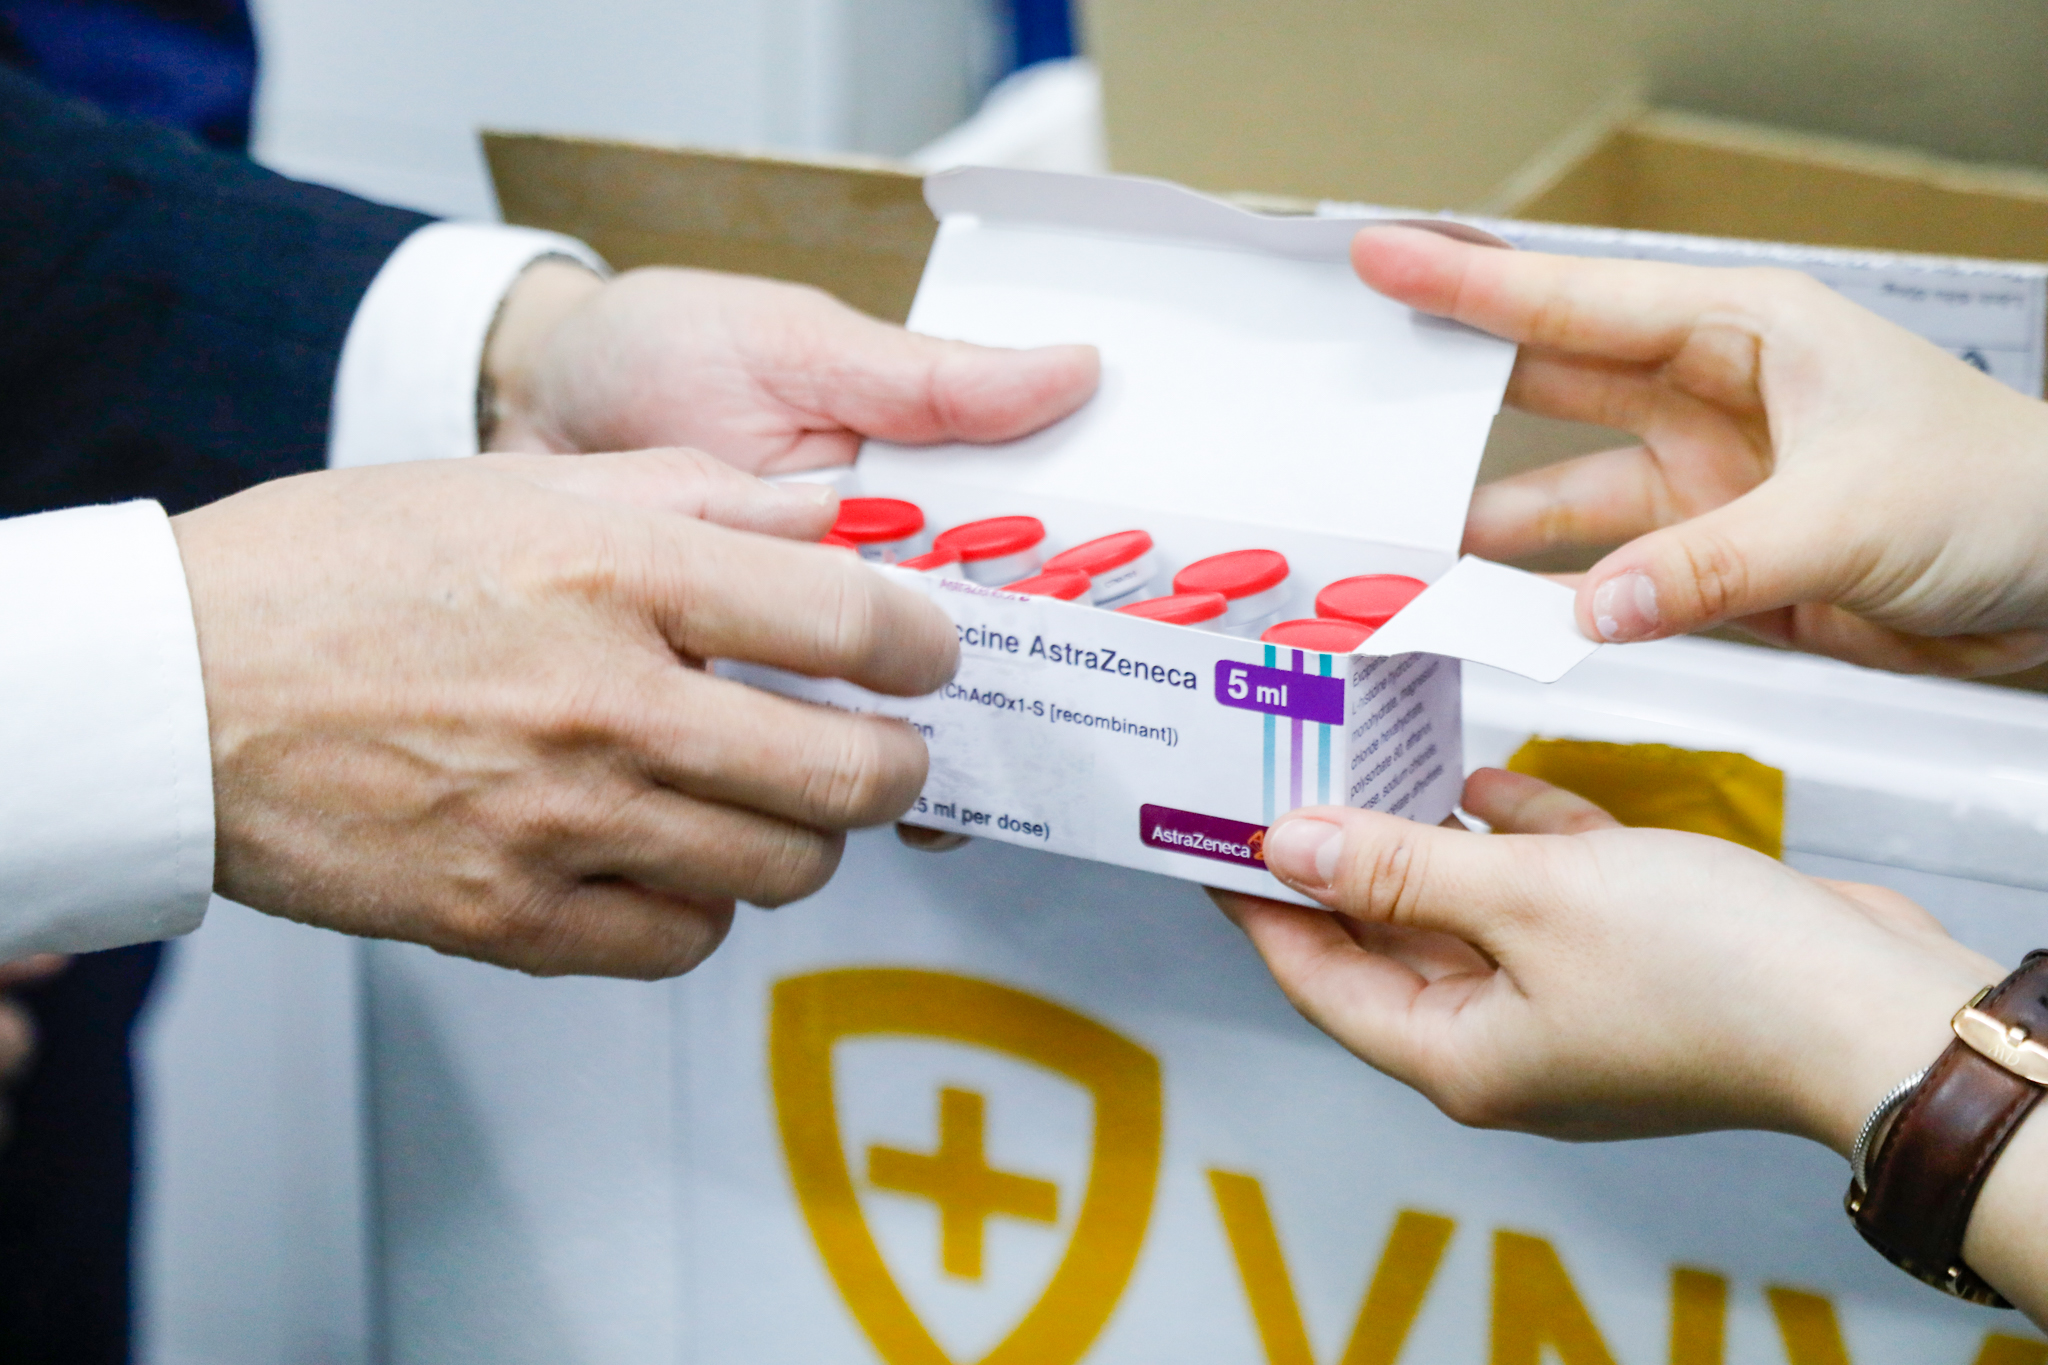 Vacxin AstraZeneca được bảo quản trong kho của VNVC.